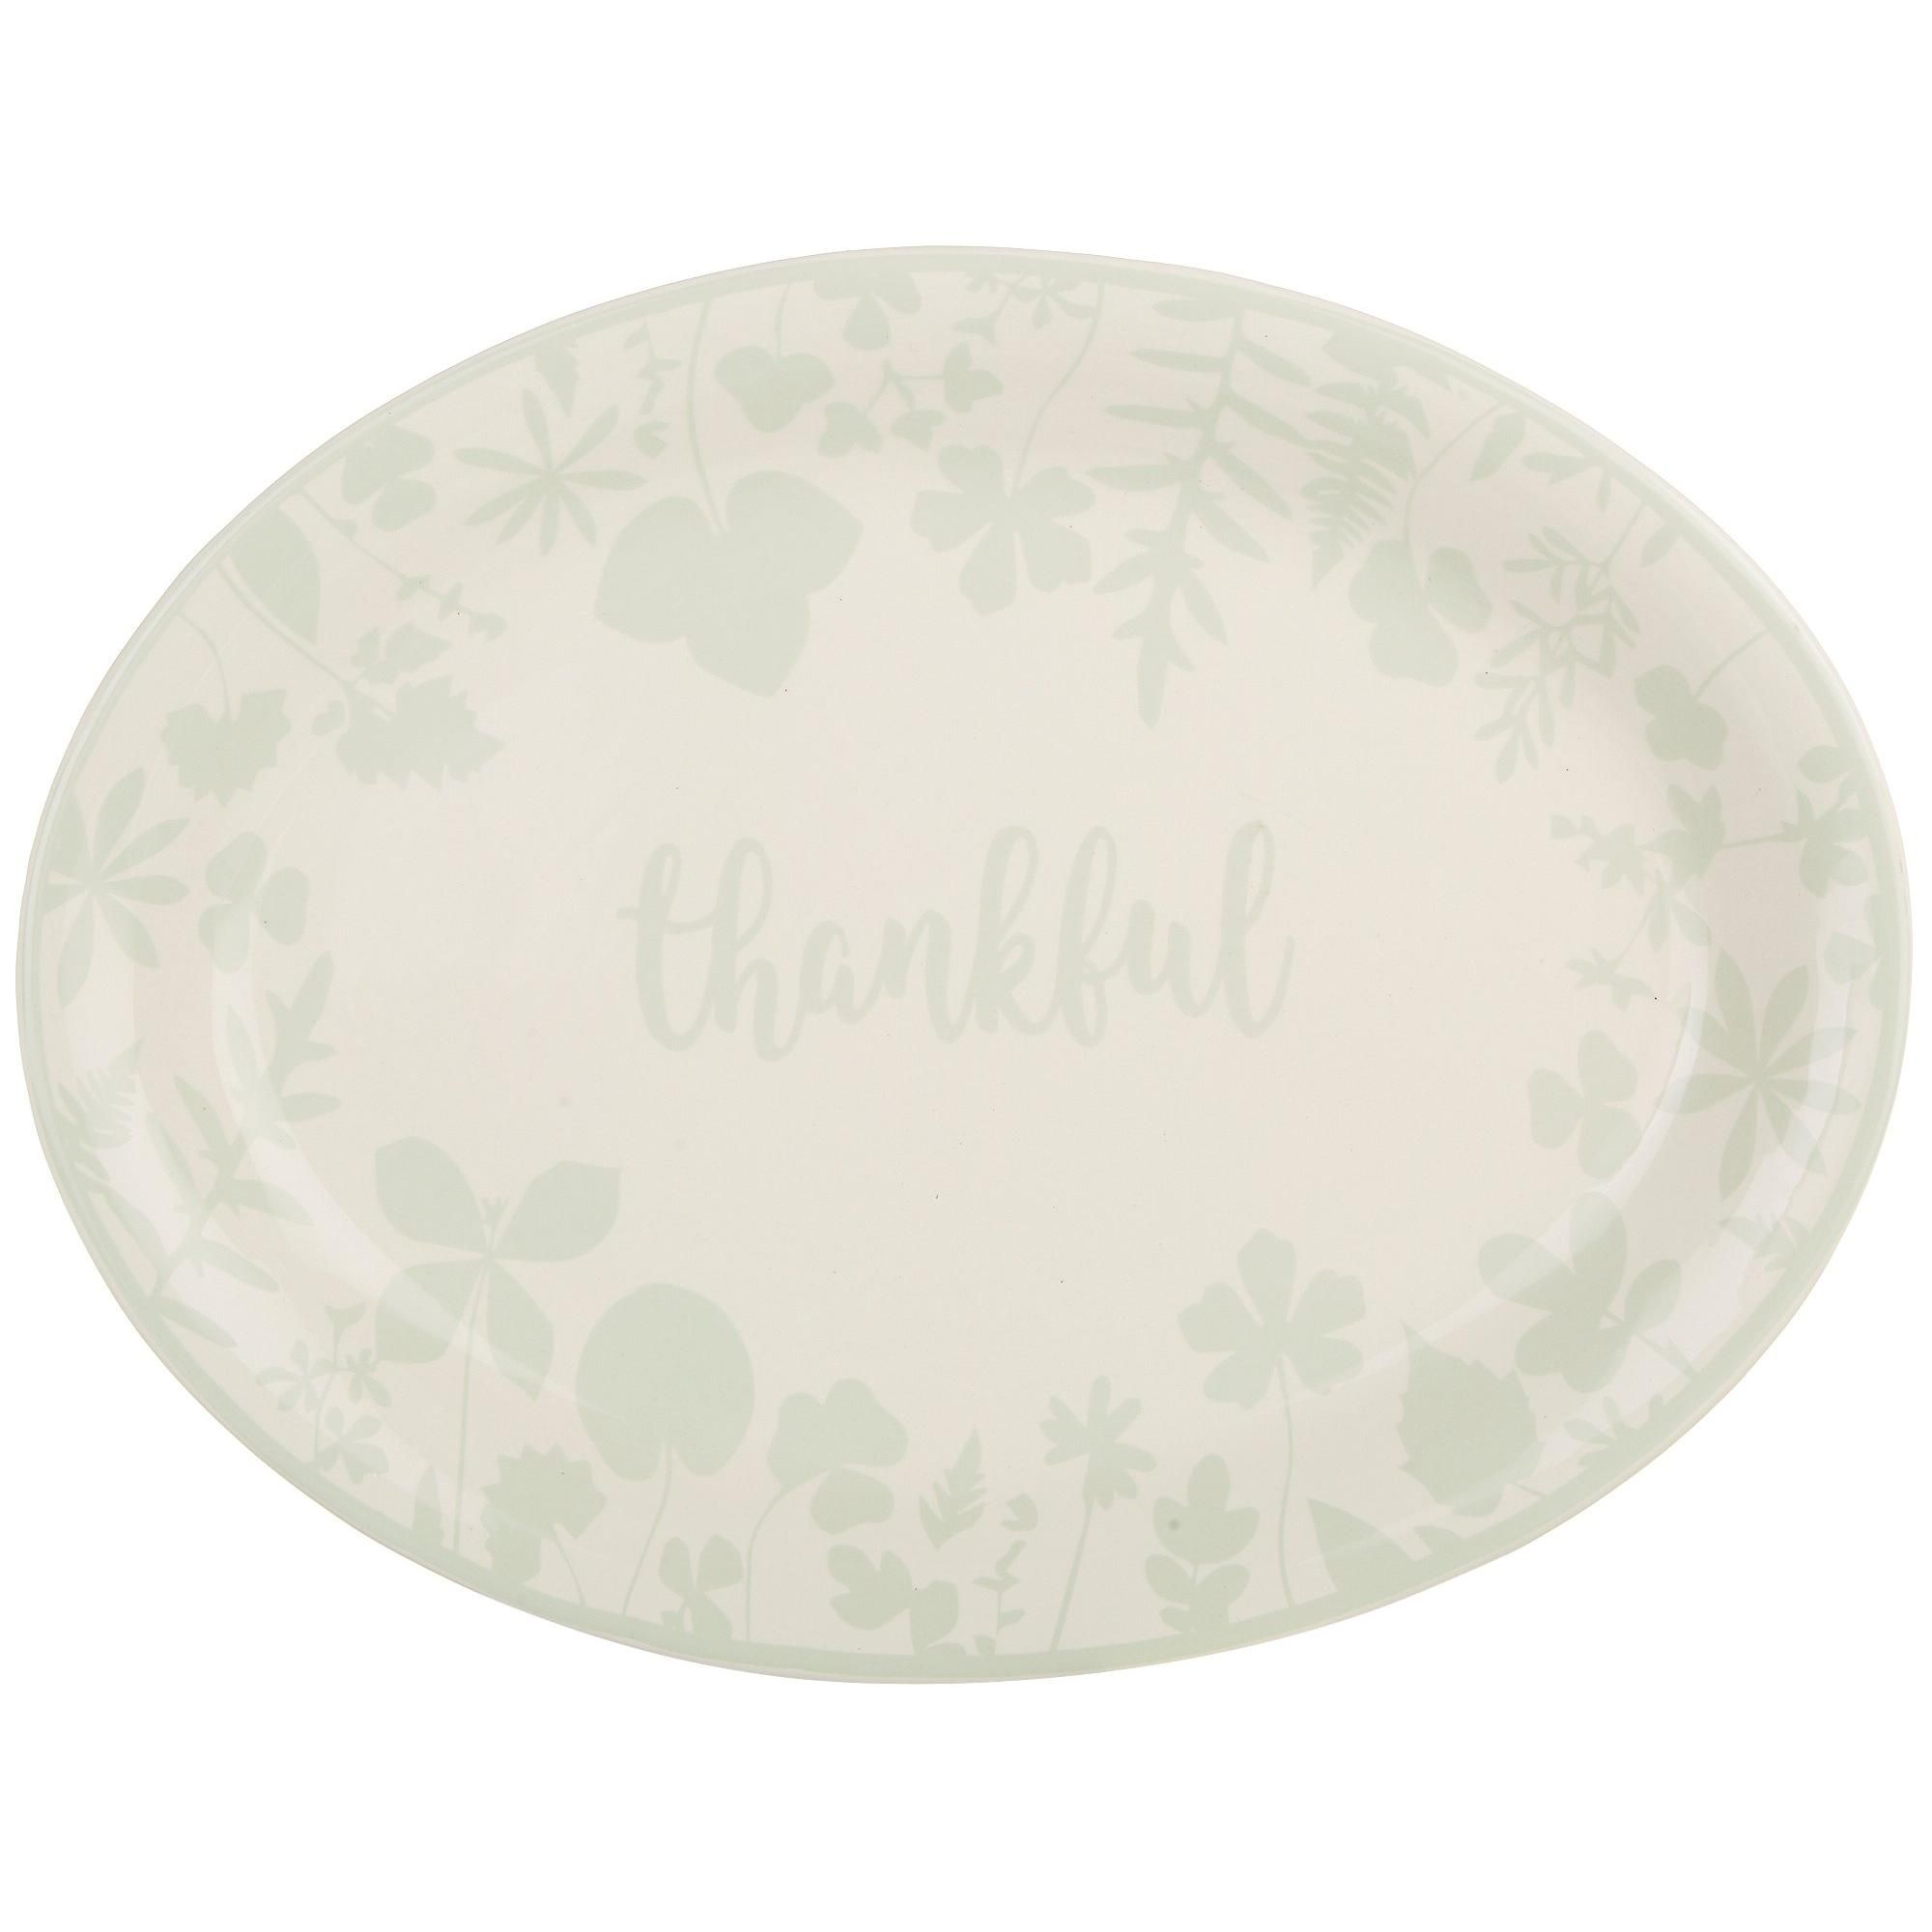 Harvest Thankful Platter - Sage-Sage-4235100742200   | Burkes Outlet | bealls